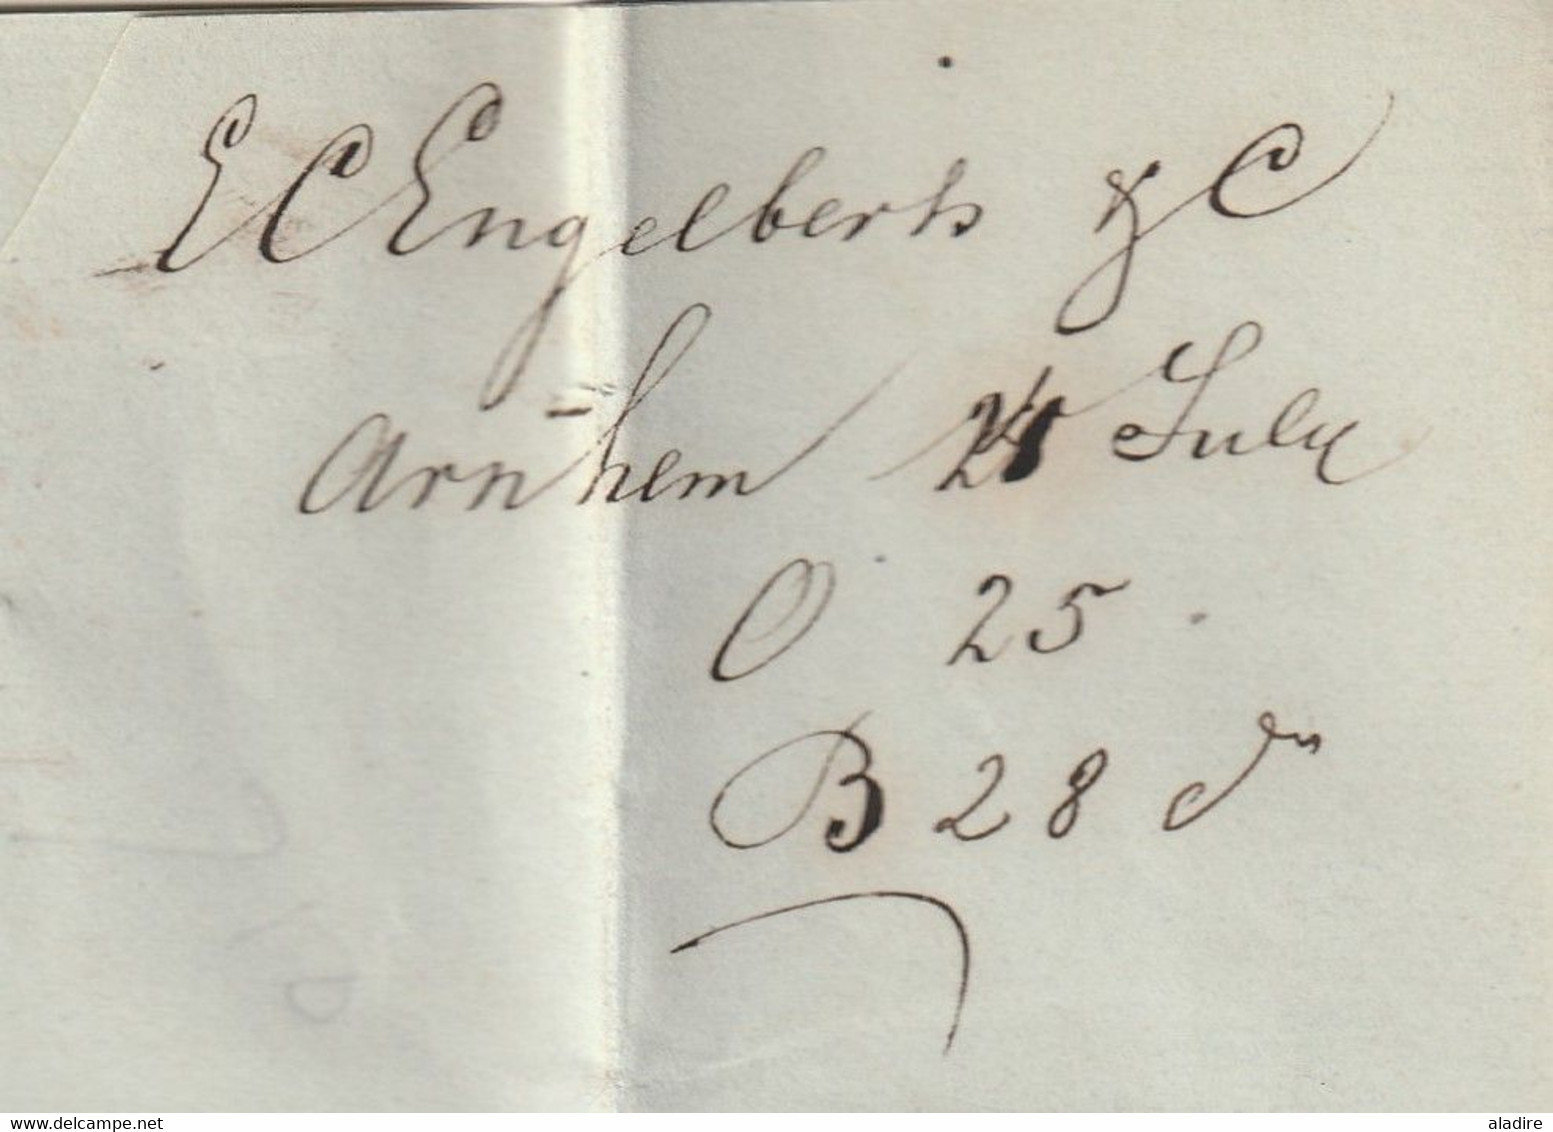 1843 - Lettre pliée avec correspondance de ARNHEM, Pays Bas Nederland vers HAGE, Basse Saxe, Deutschland - taxe 40 !!!